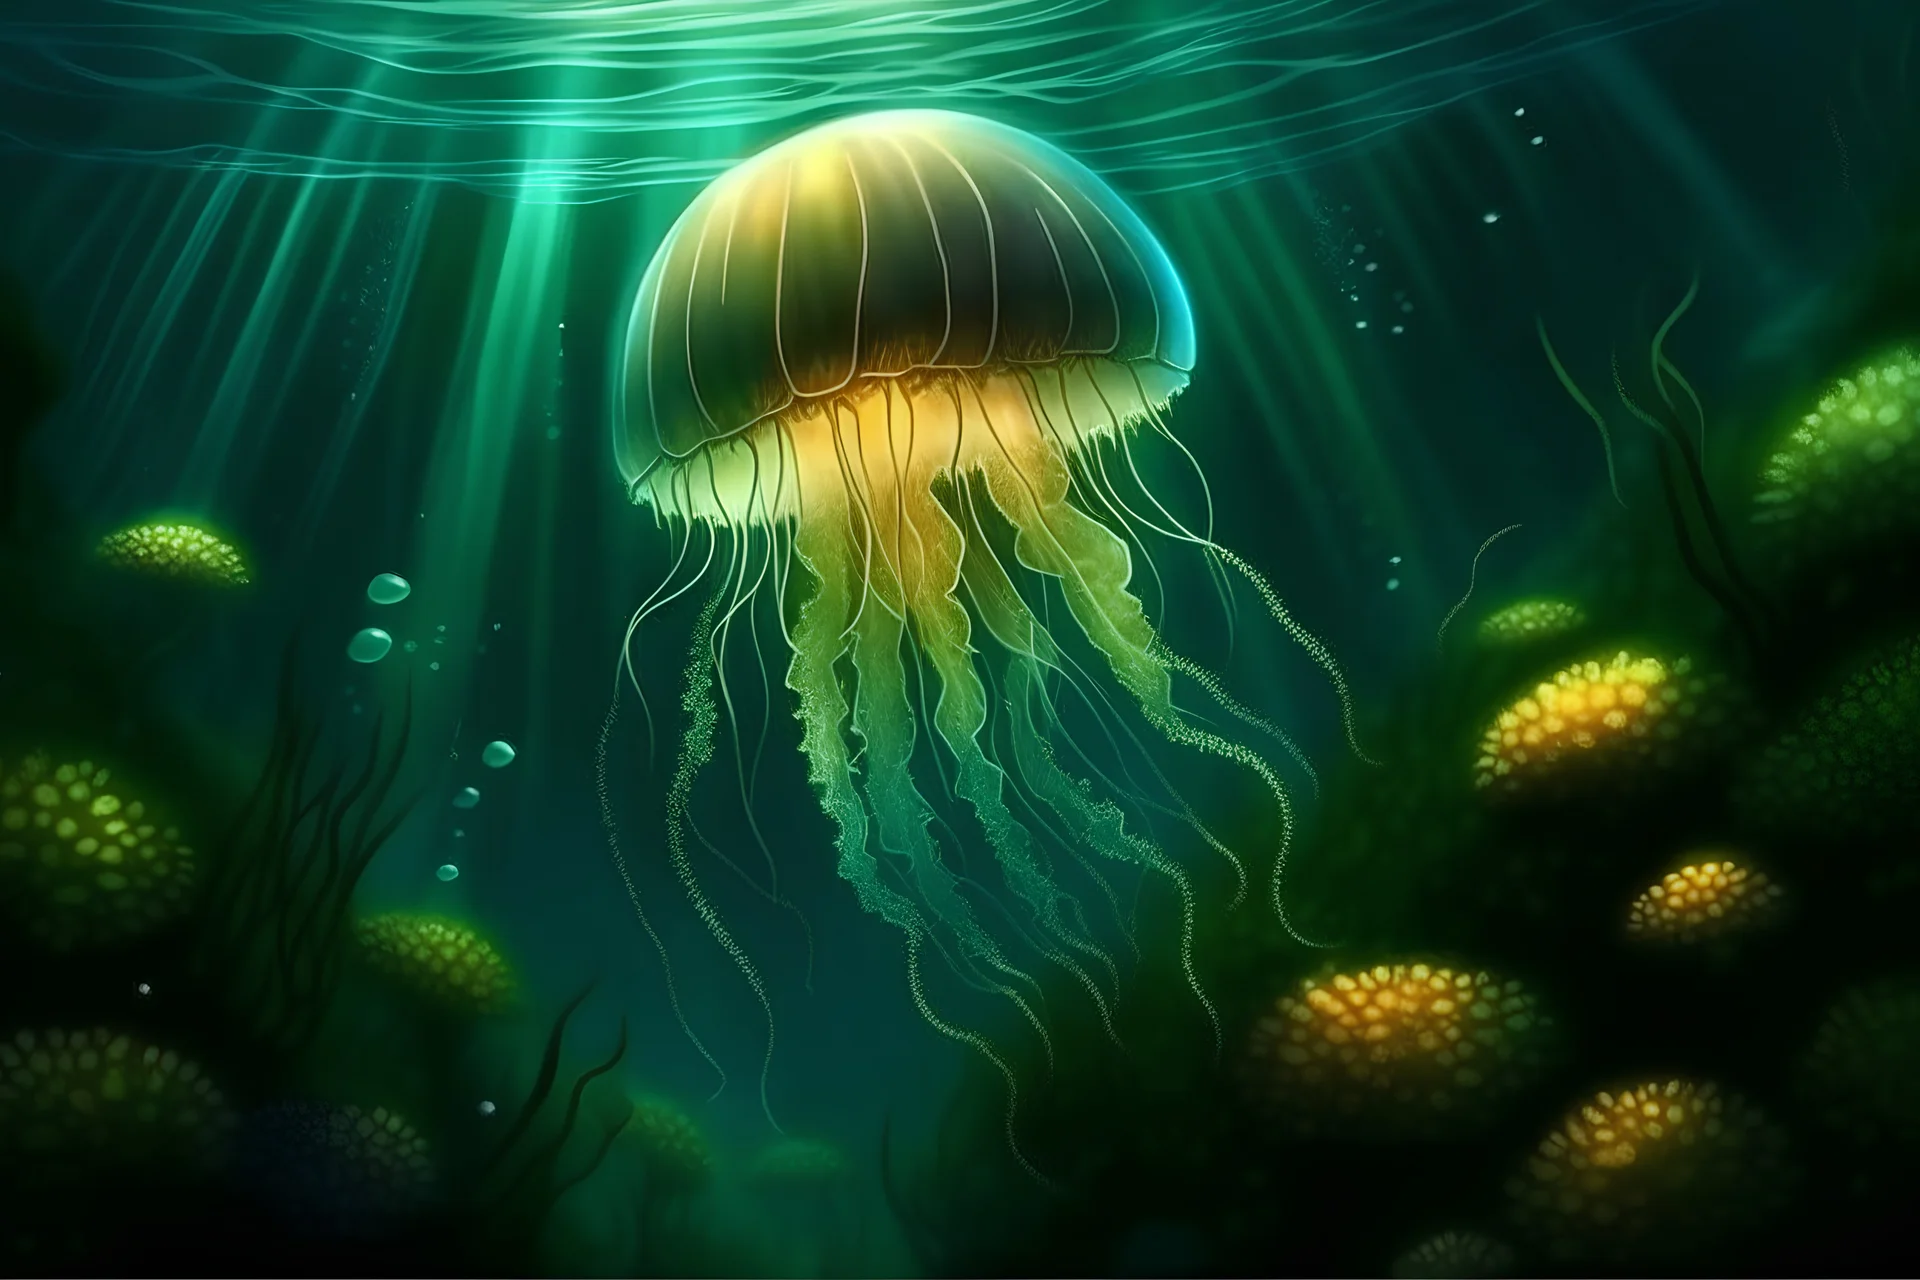 Stwórz hiperrealistyczny obraz meduzy pod czystym oceanem, glonów i roślin pod powierzchnią morza oraz mistycznego blasku za meduzą, wodnym cudem, Tajemniczy